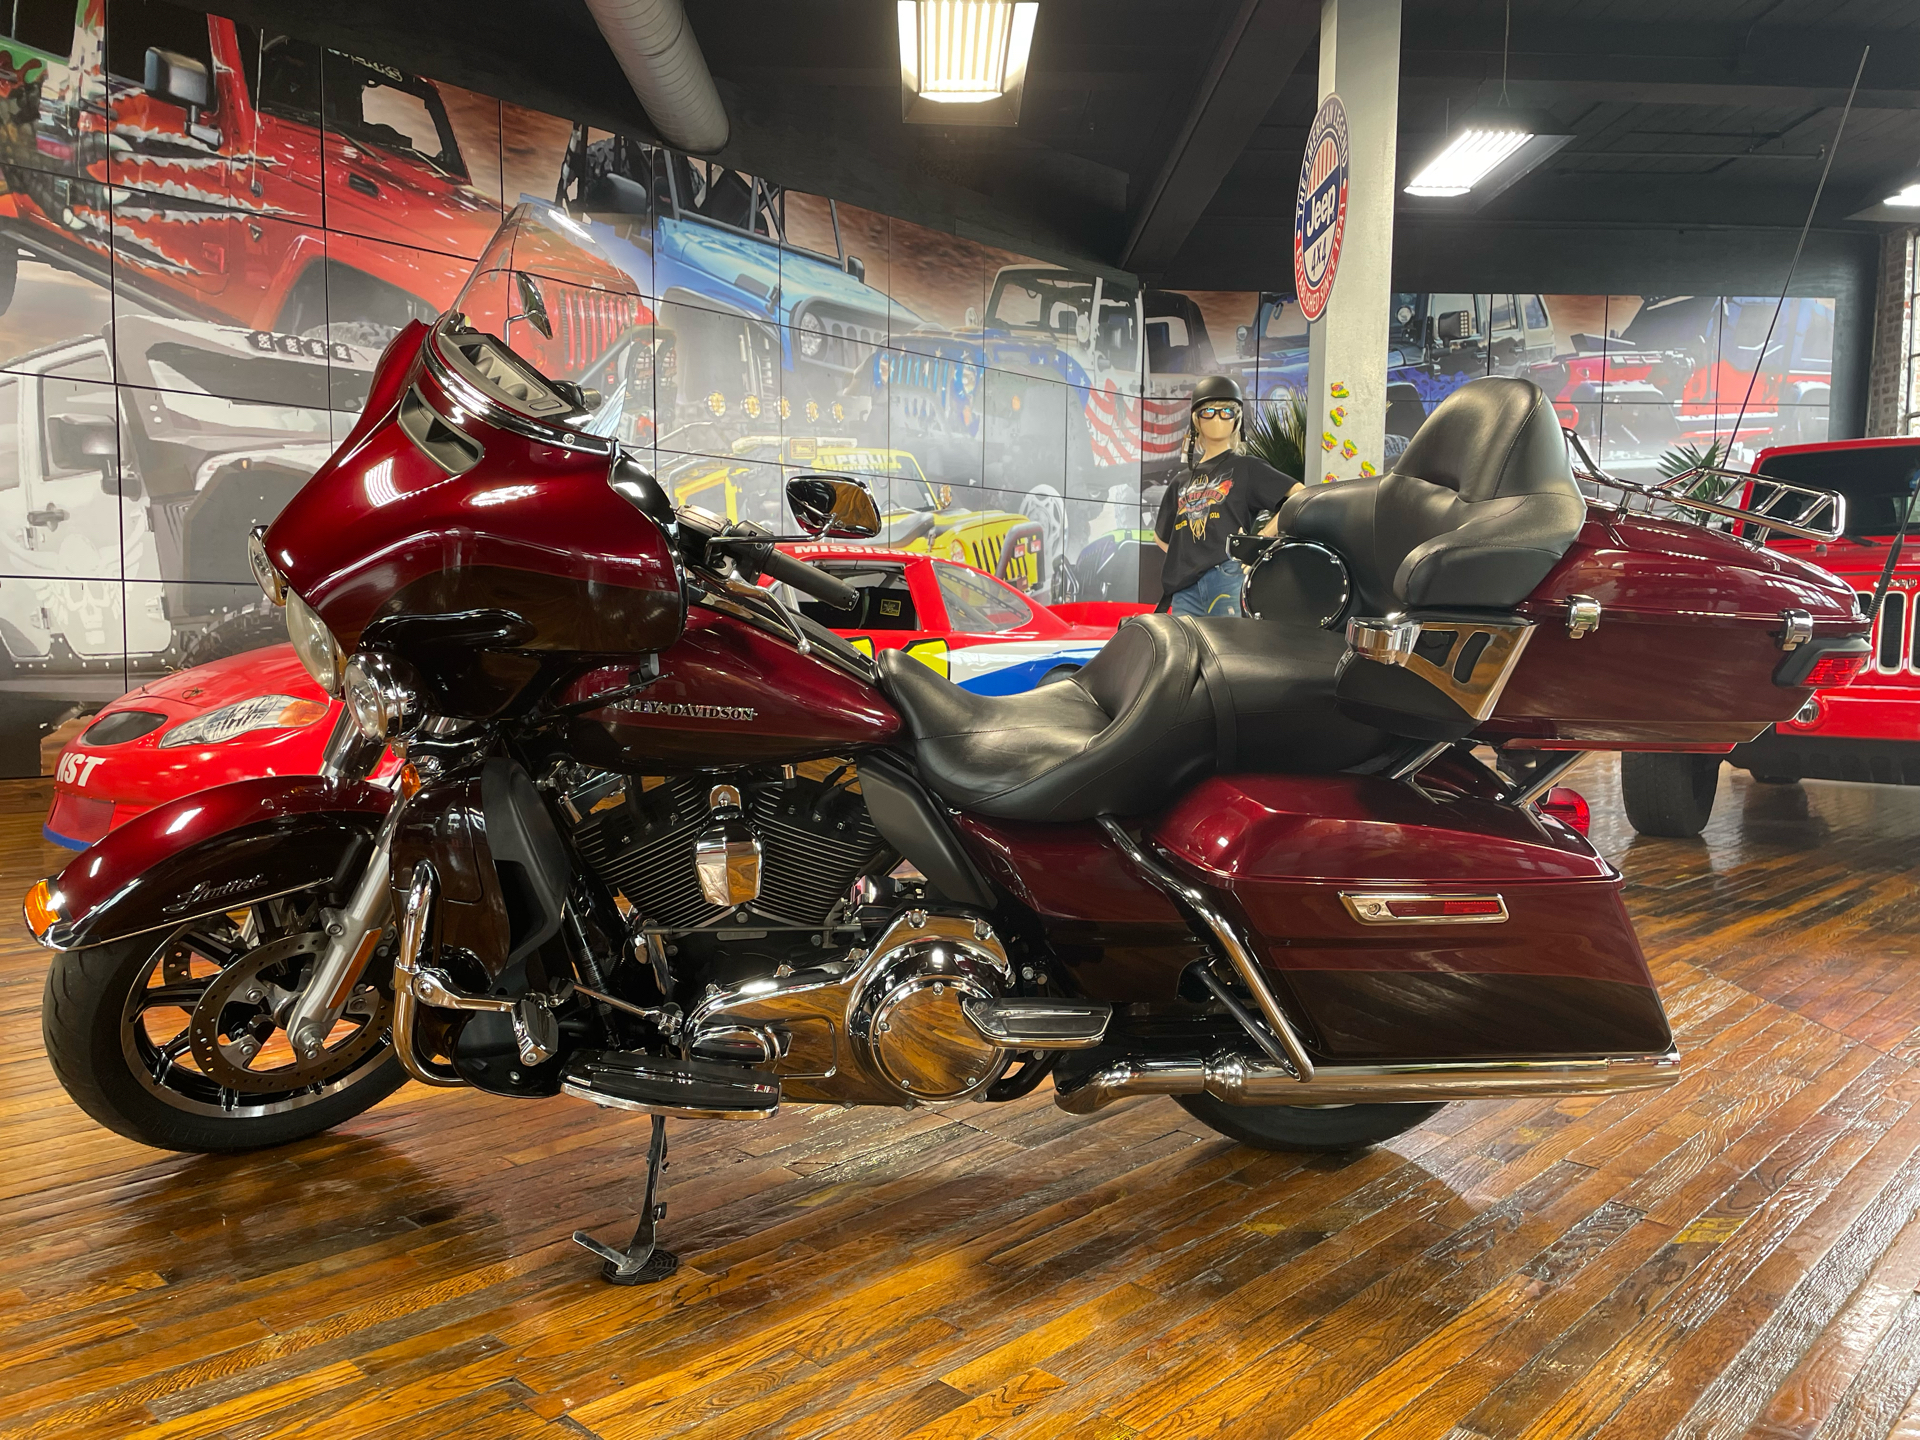 2014 Harley-Davidson Ultra Limited in Laurel, Mississippi - Photo 5